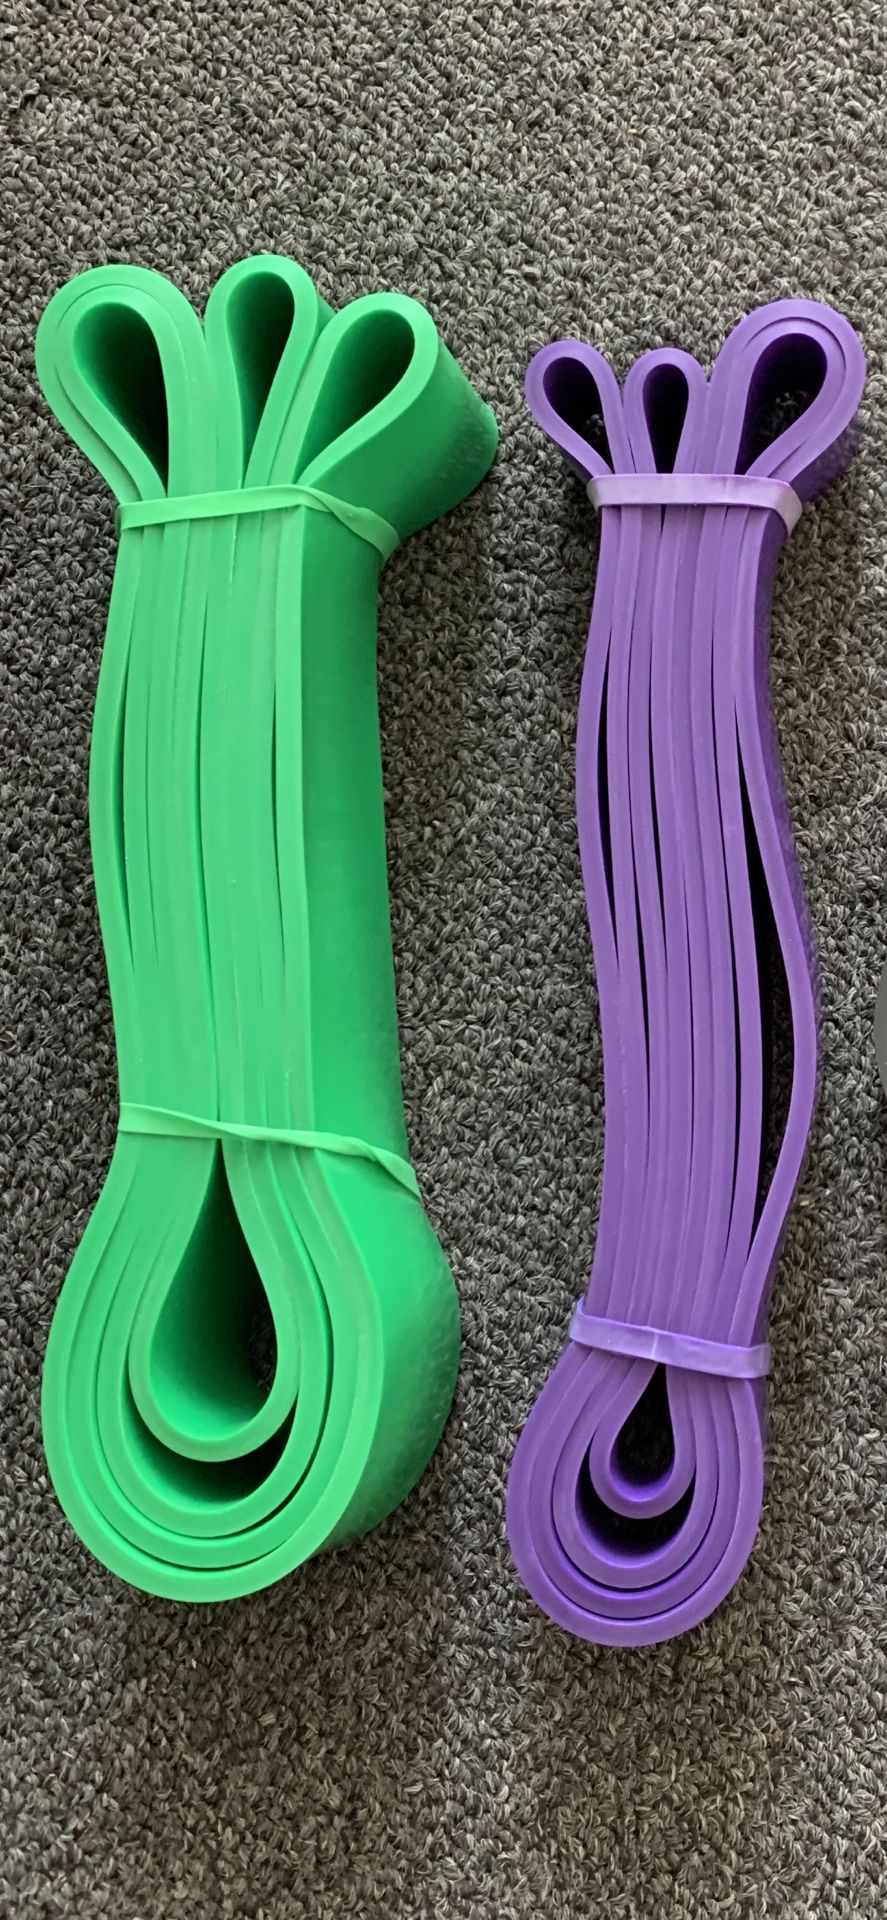 Green n purple bands pair